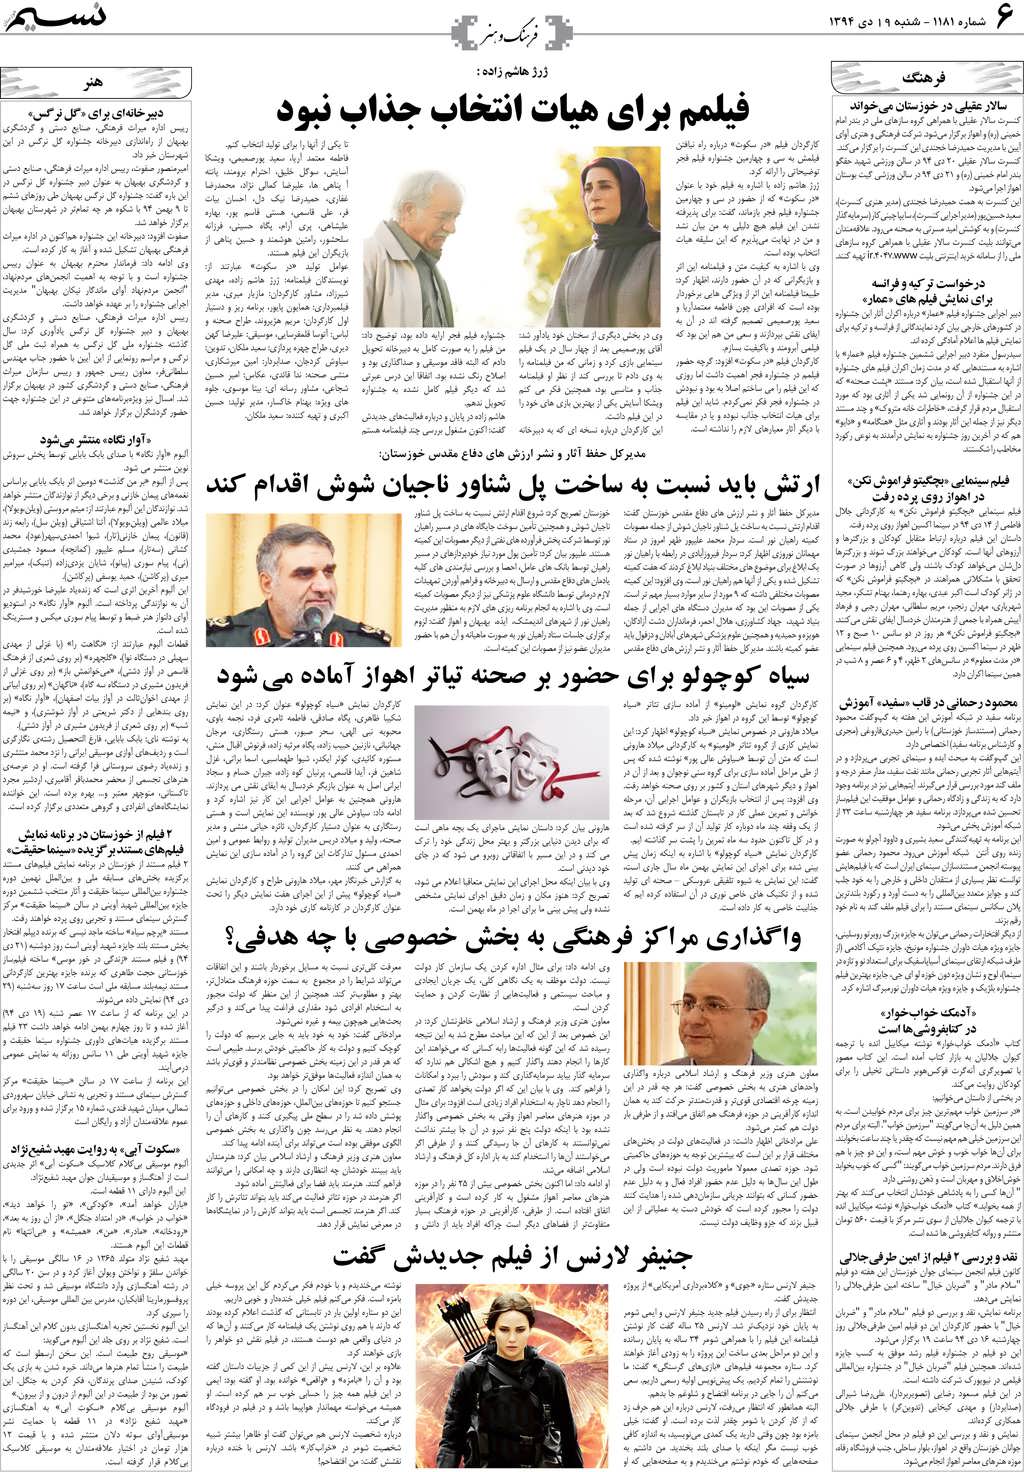 صفحه فرهنگ و هنر روزنامه نسیم شماره 1181